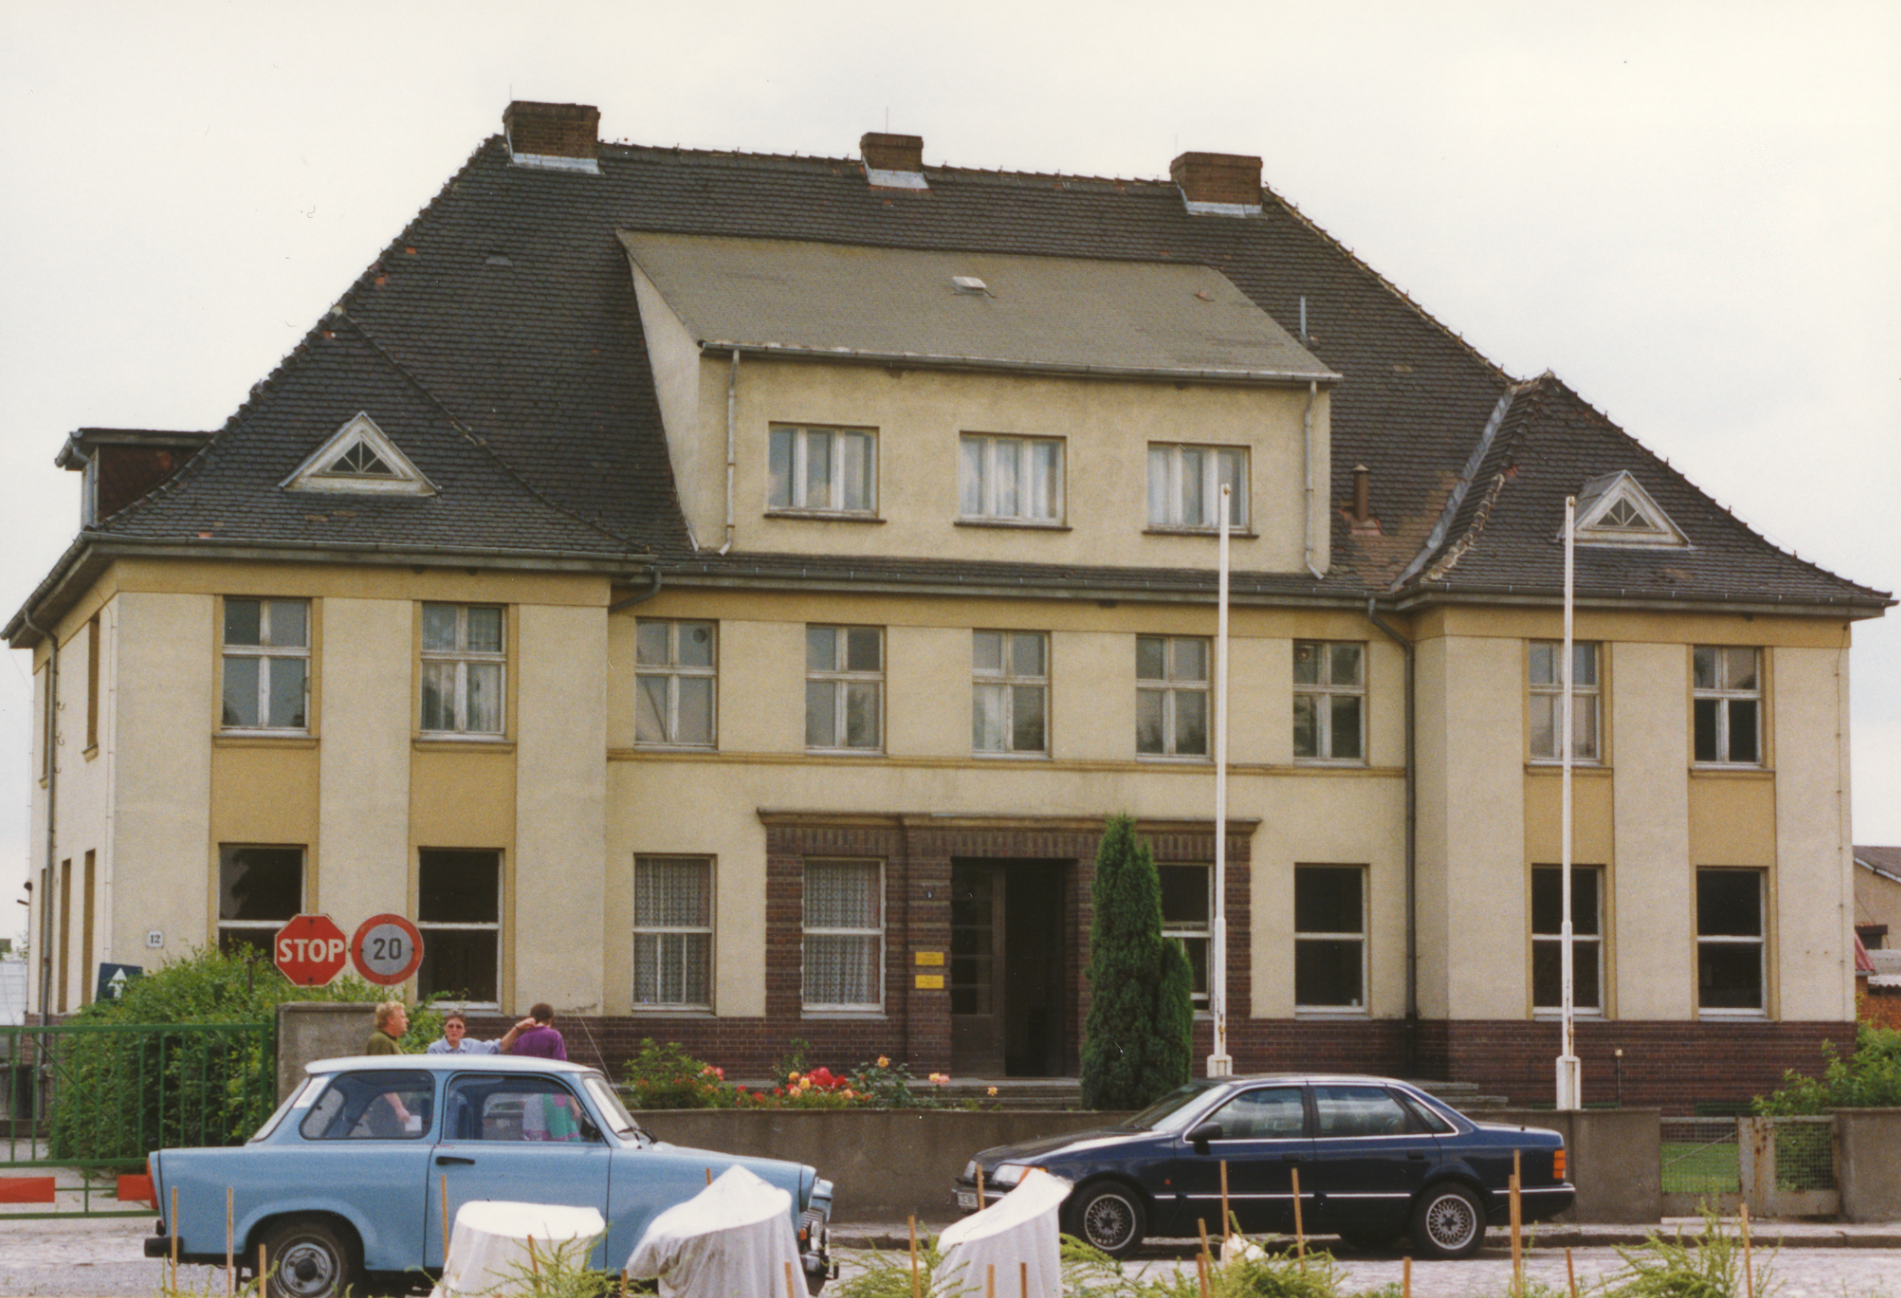 Institutet för växtförädling i Klein Wanzleben, grundat 1930, är i dag förädlingsstationens administrativa byggnad